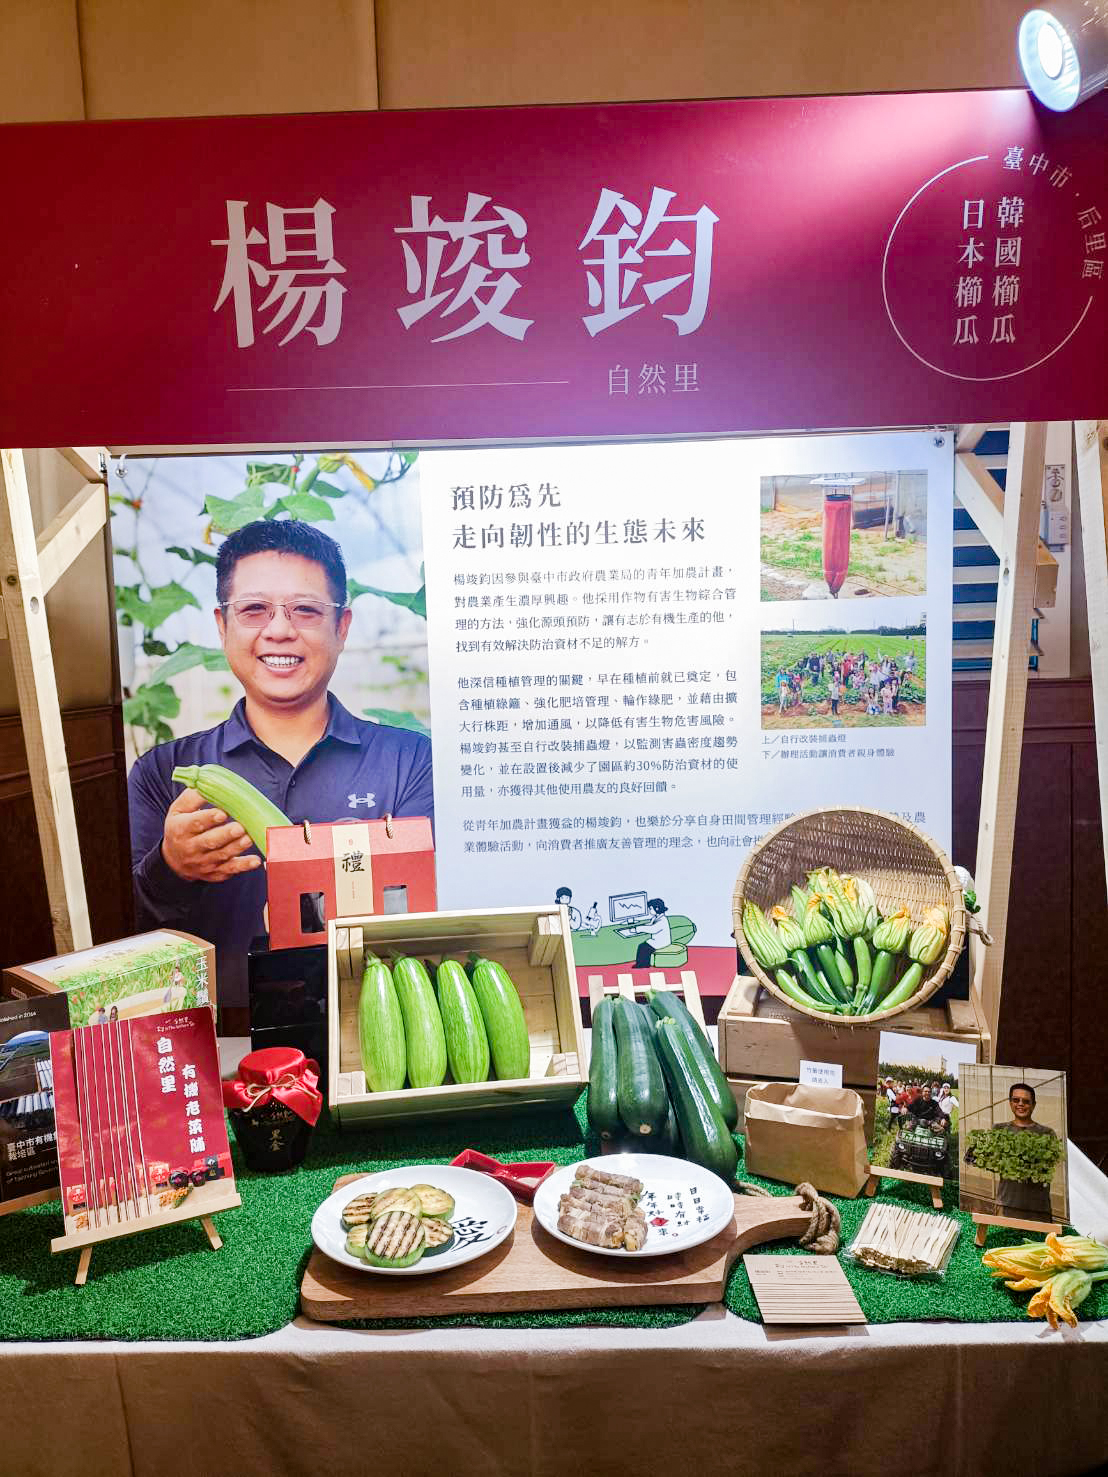 第三屆永續善農獎IPM Award臺中市后里區楊竣鈞青農現場展示栽培成果。